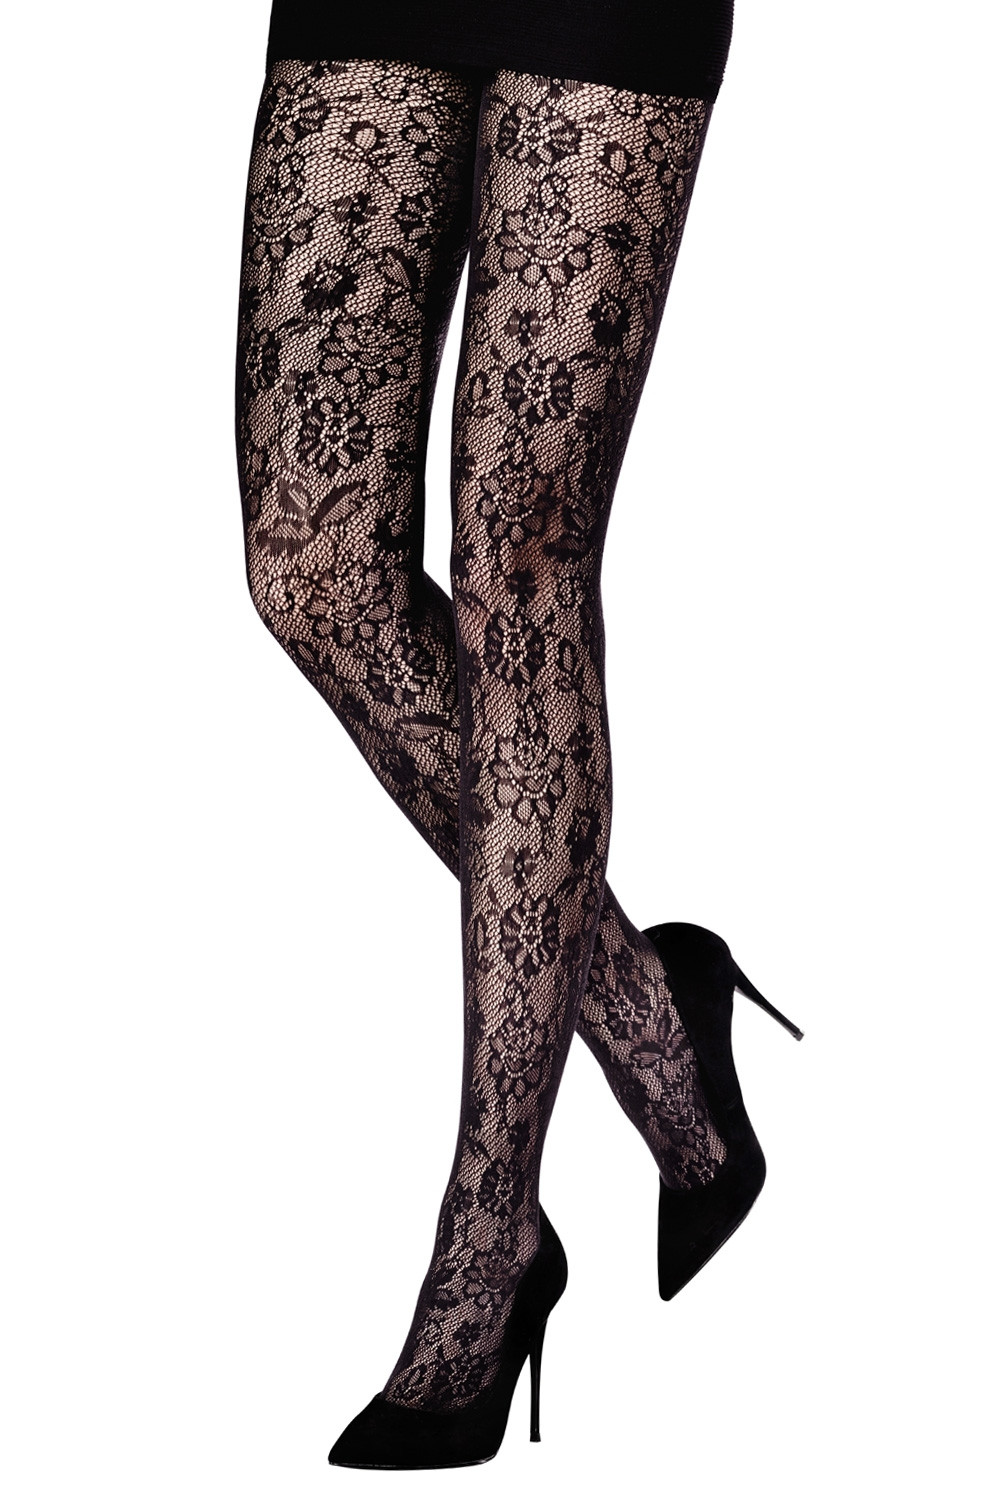 Rose Embossed Patterned Tights – Silver Legs Hosiery